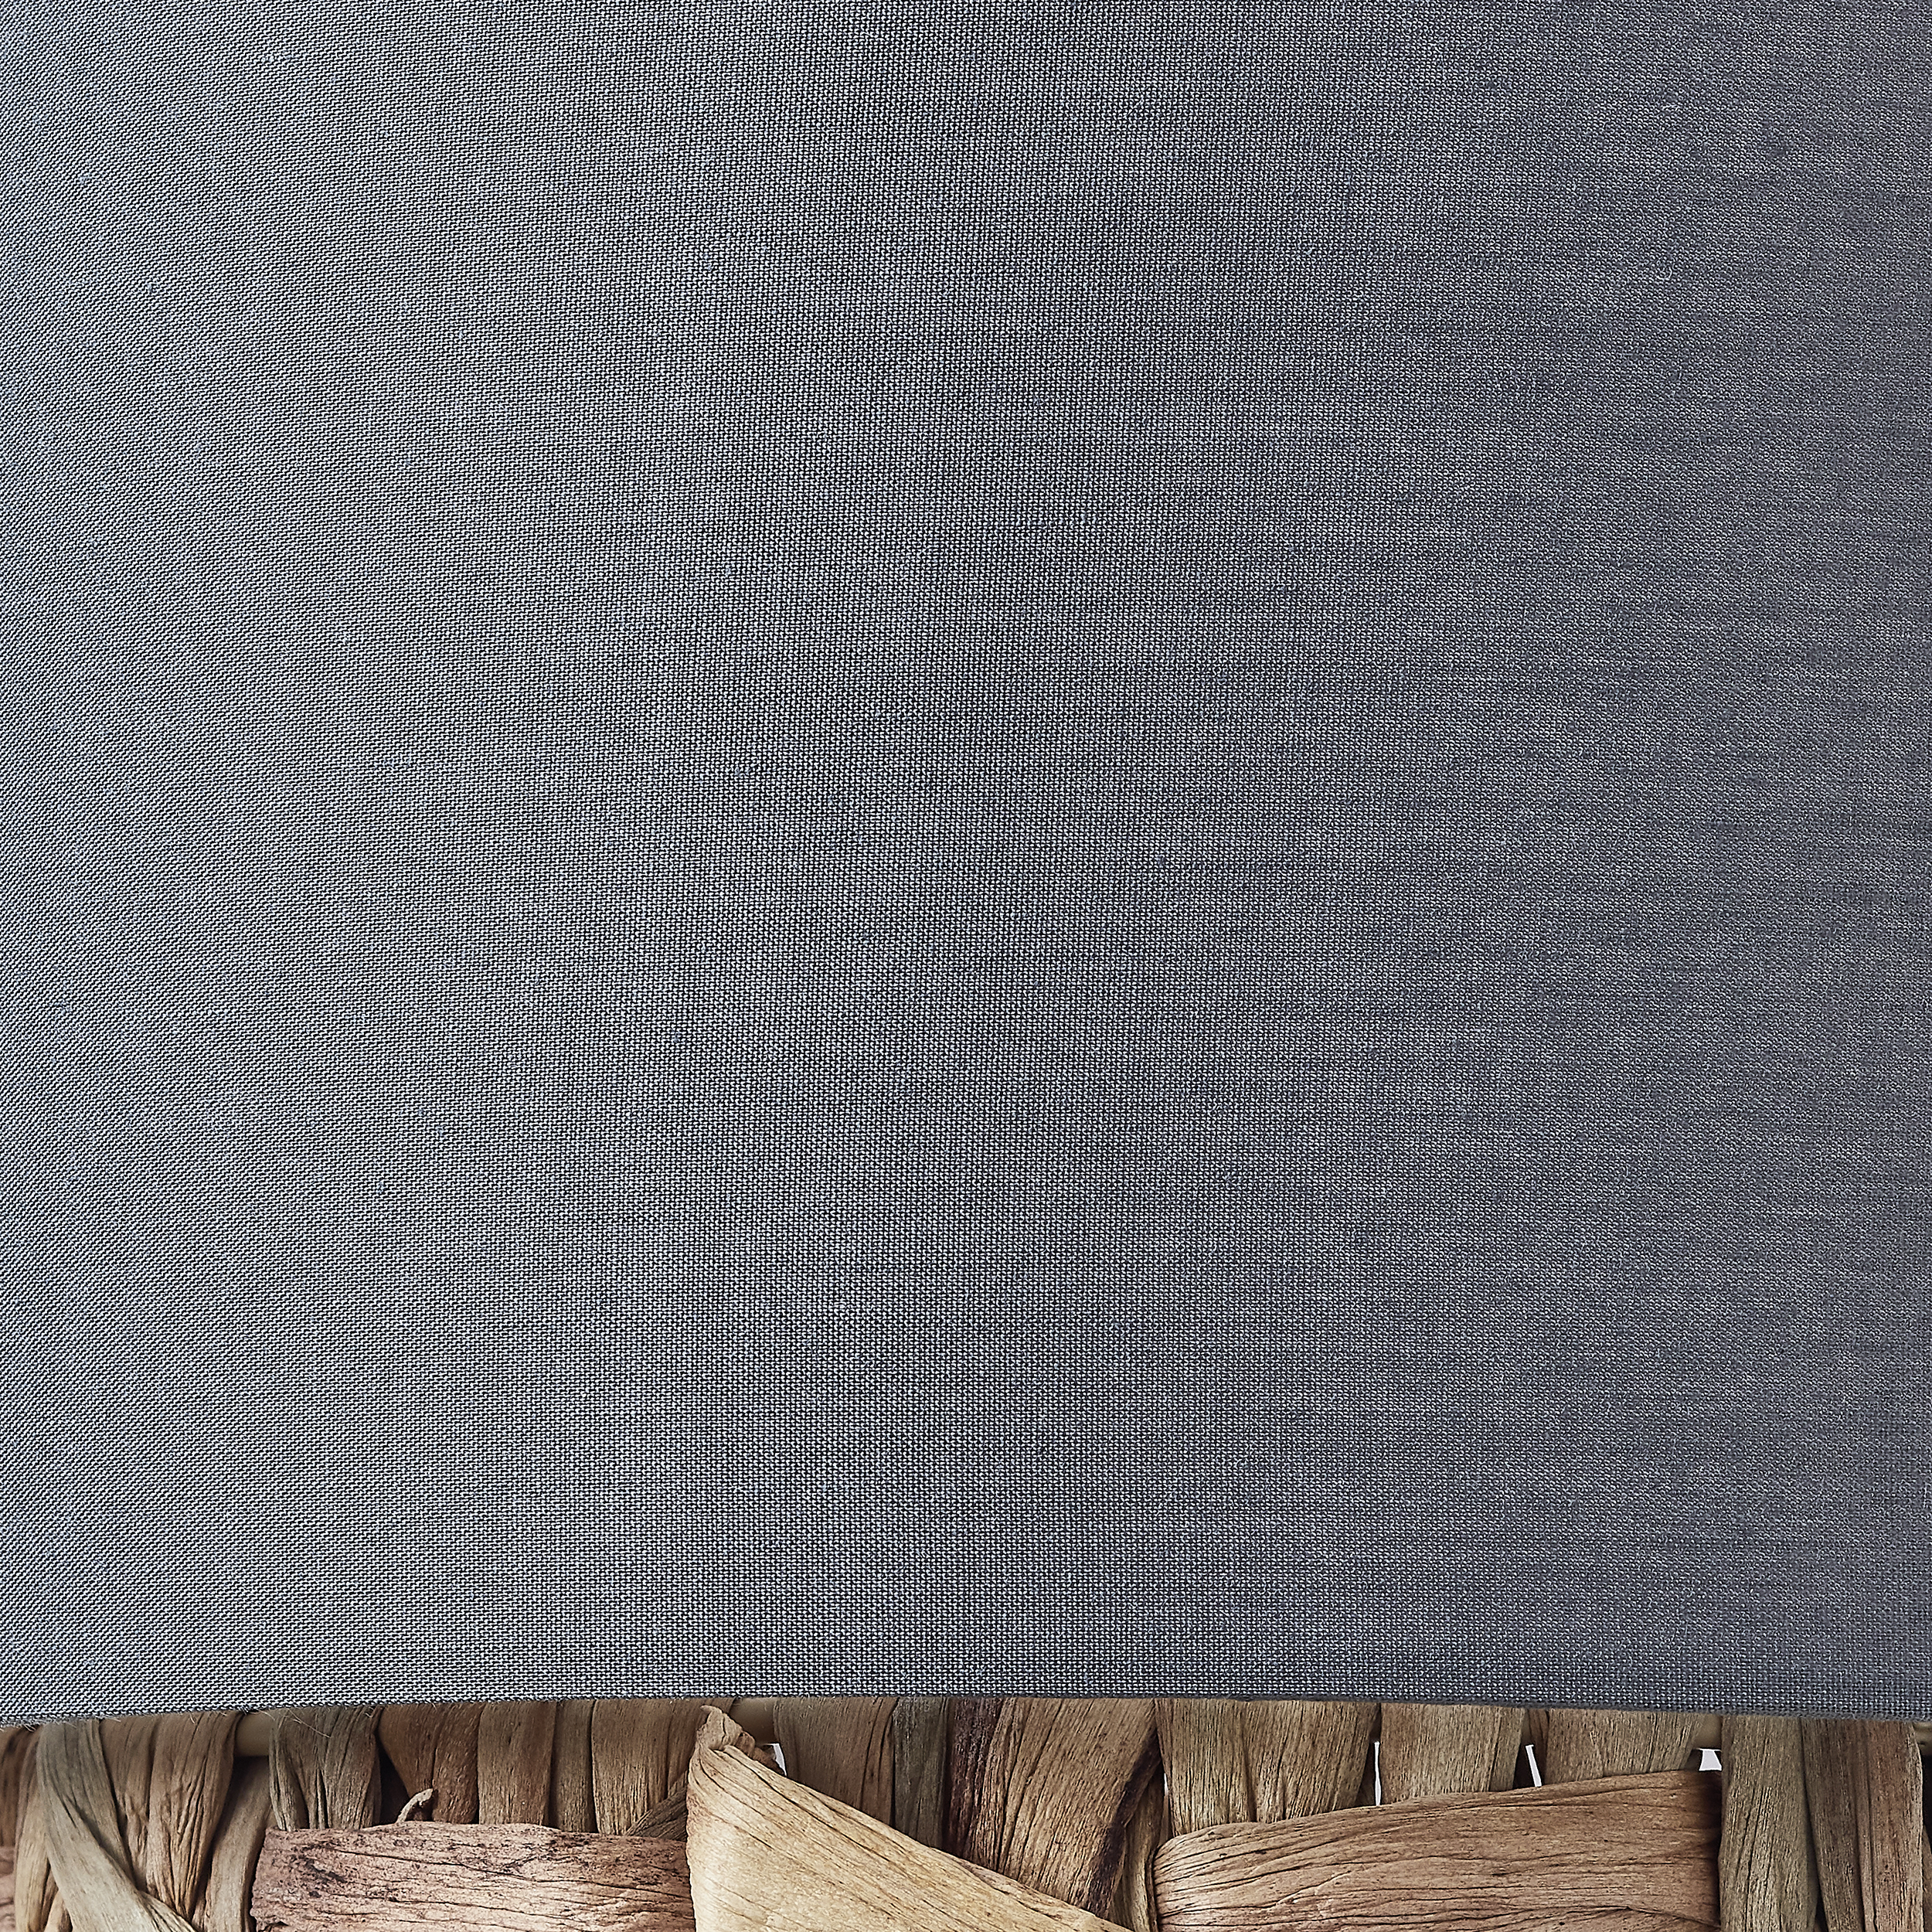 Stehleuchten Waterlilly grau/beige Metall/Textil/Wasserhyazinthe